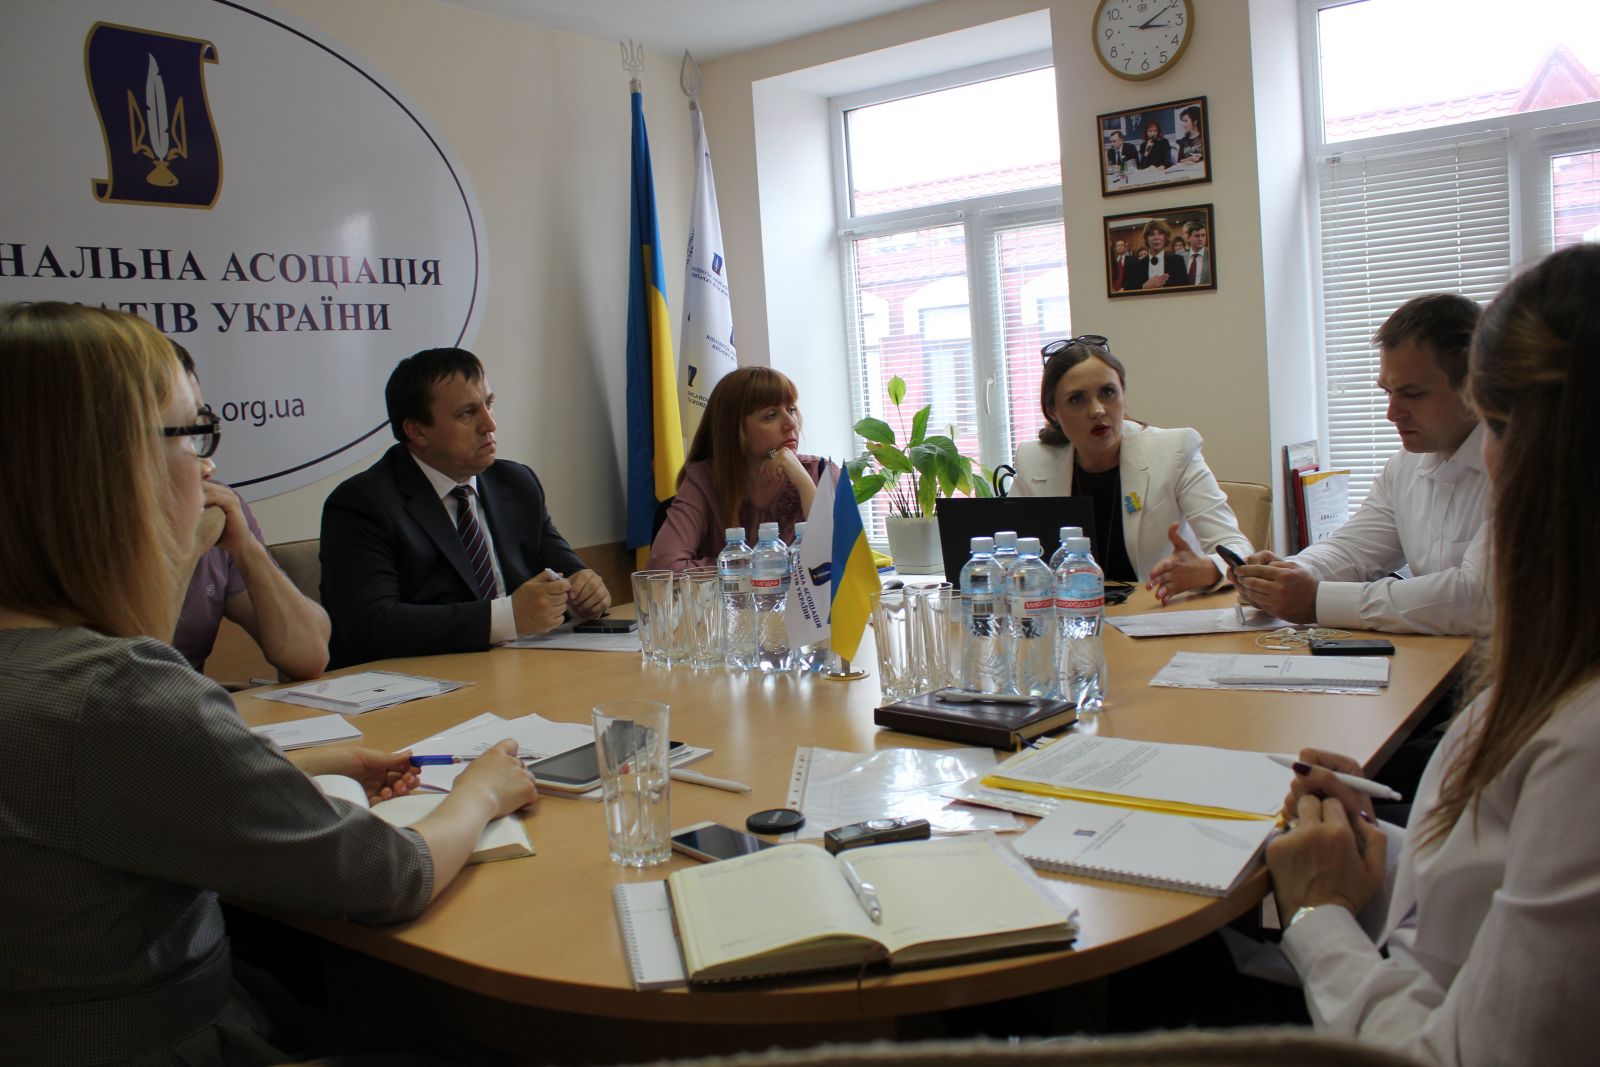 Комитет по вопросам координации оказания помощи участникам Антитеррористической операции, членам их семей и переселенцам при Национальной ассоциации адвокатов Украины